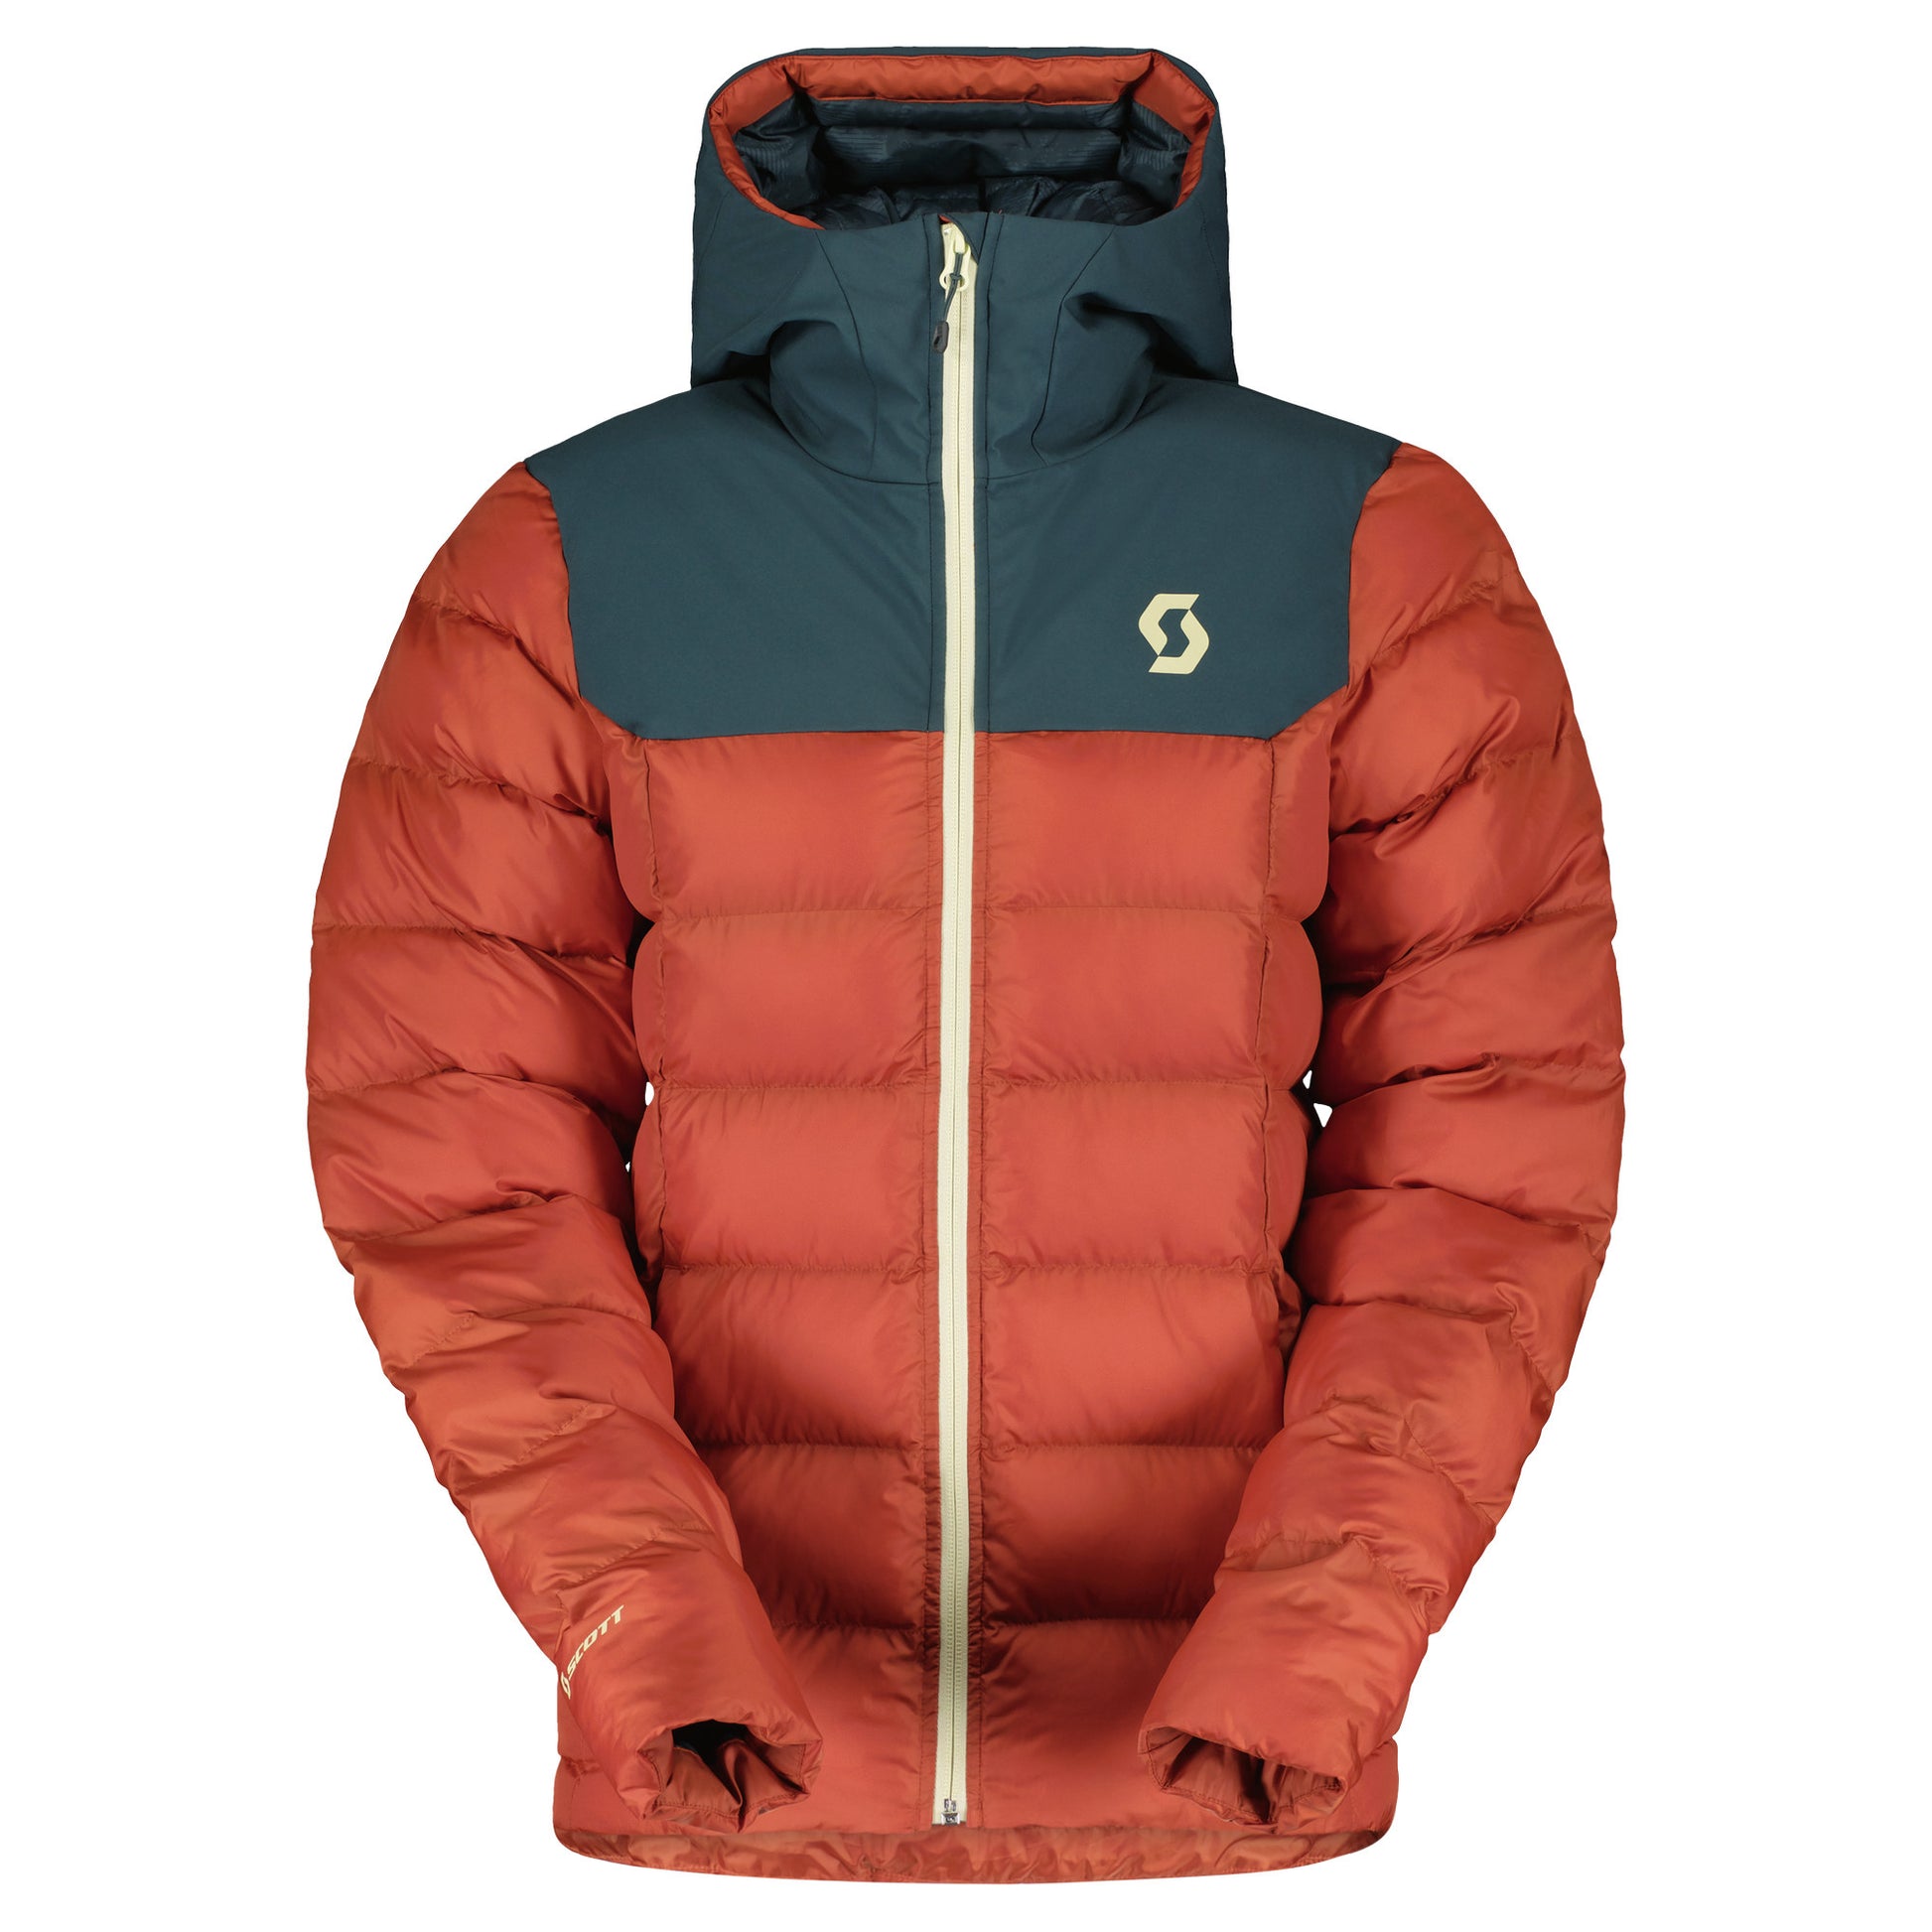 Scott Women's Insuloft Warm Jacket Aruba Green/Earth Red Snow Jackets